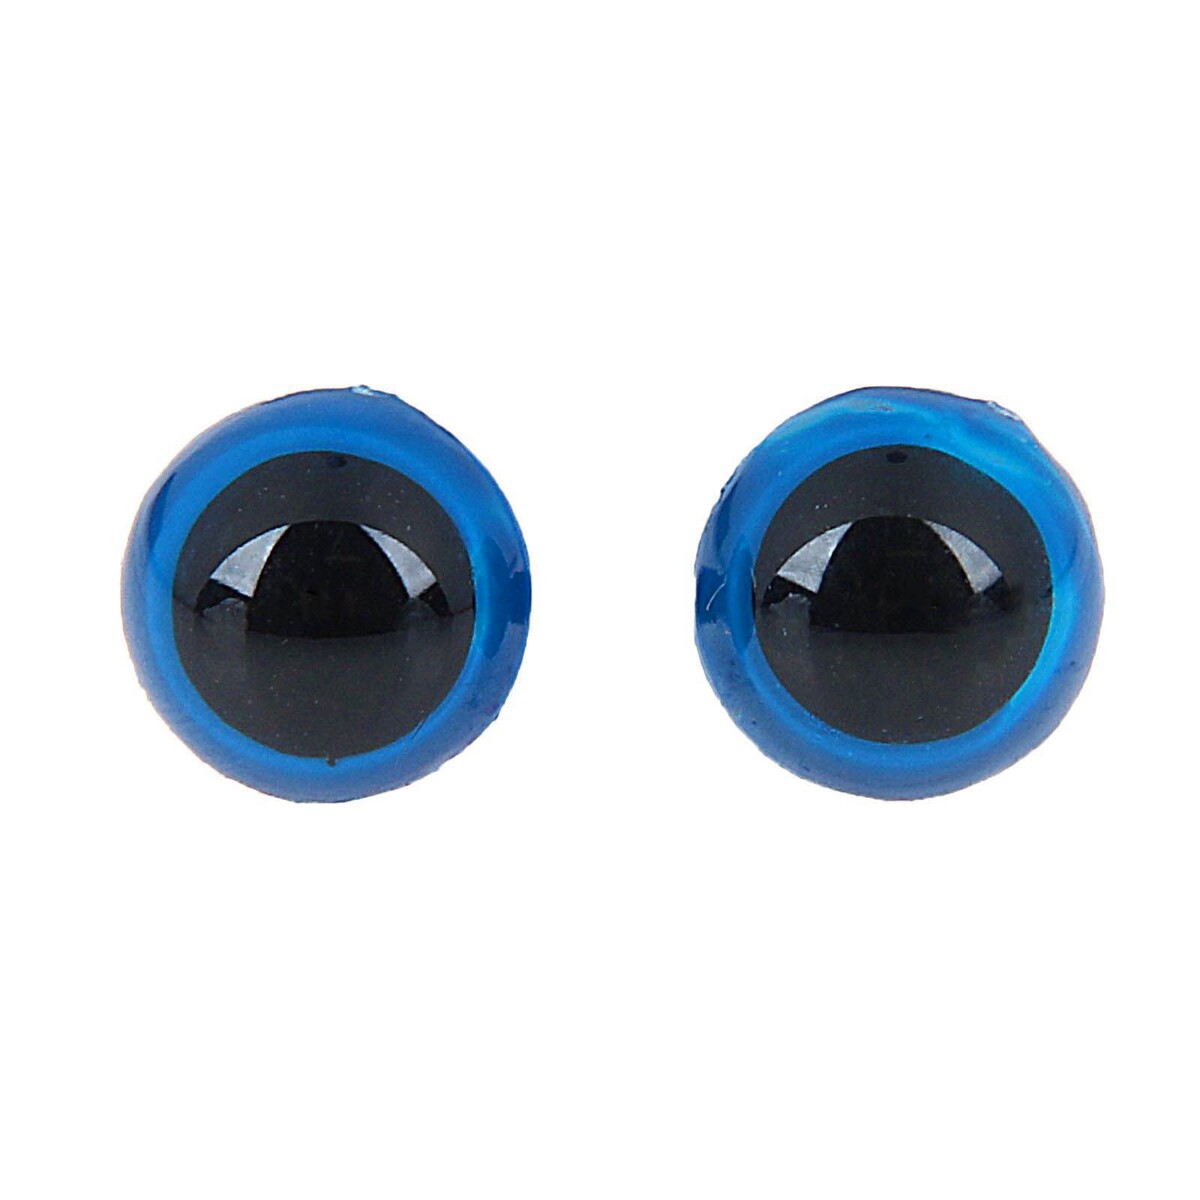 Глаза винтовые с заглушками, полупрозрачные, набор 4 шт, цвет голубой, размер 1 шт: 1,3×1,3 см глазки для кукол винтовые с заглушками полупрозрачные набор 4 шт голубой размер 1 шт 2×2 см